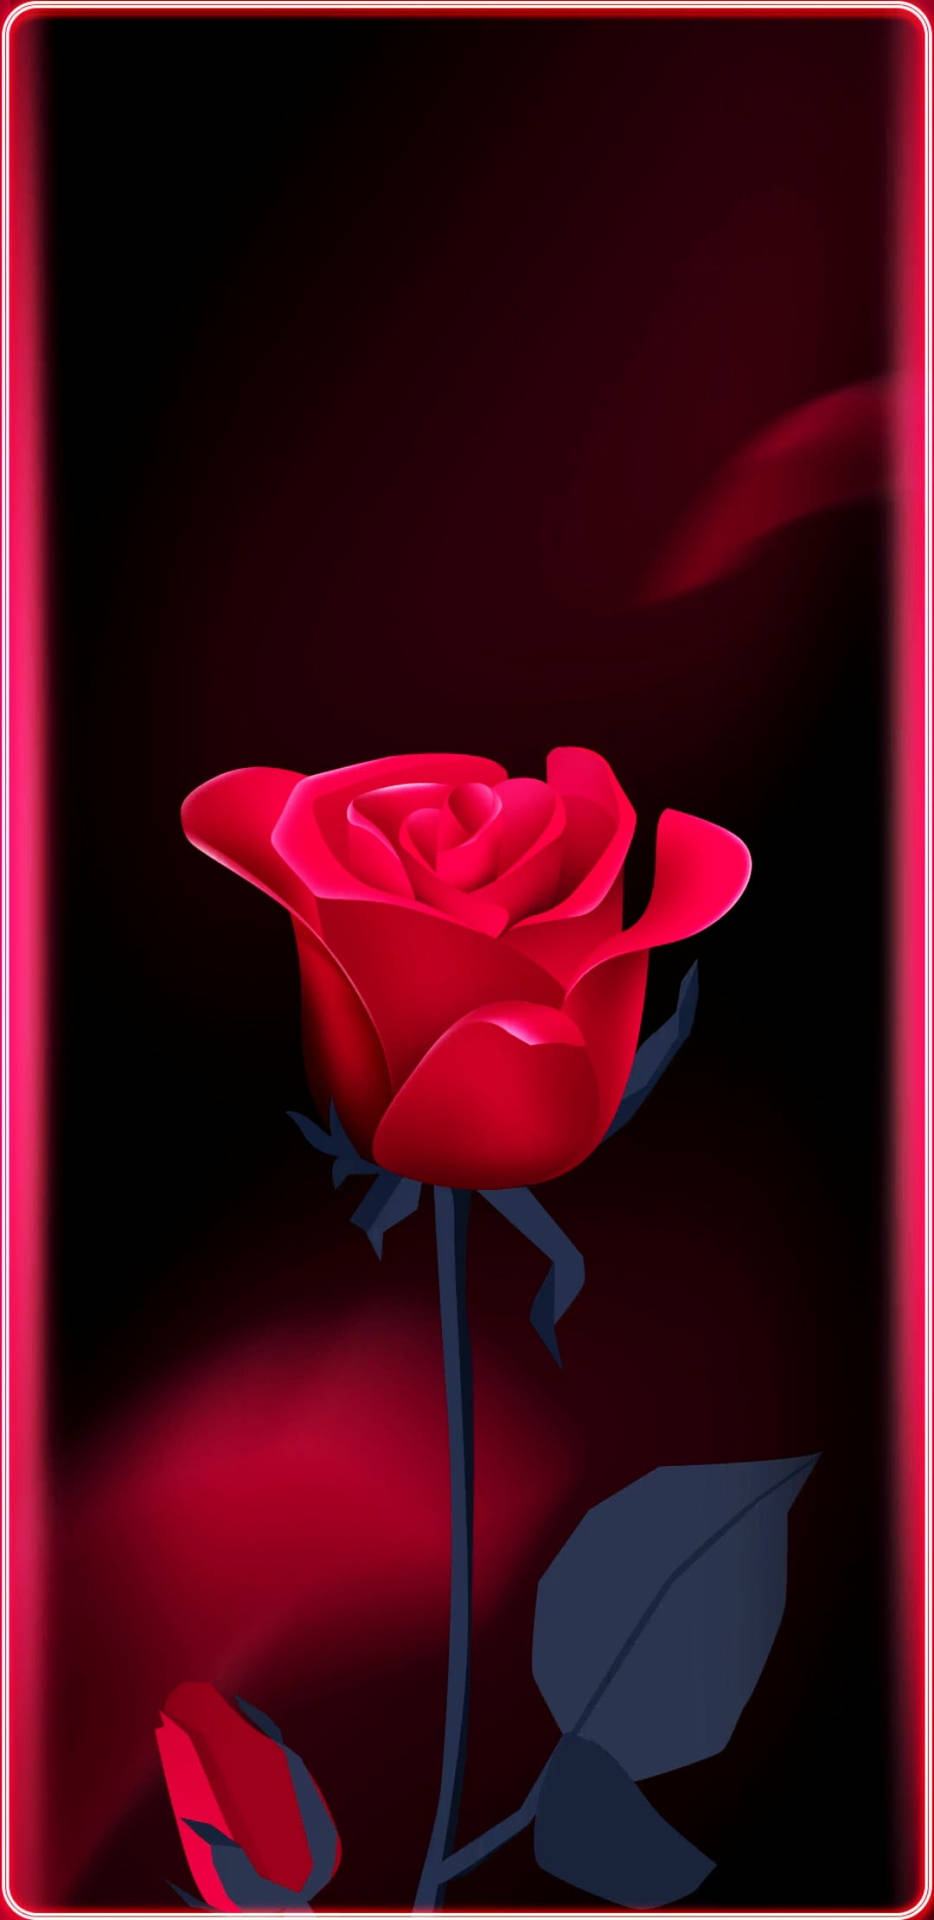 Rose Flower Mobile Wallpaper